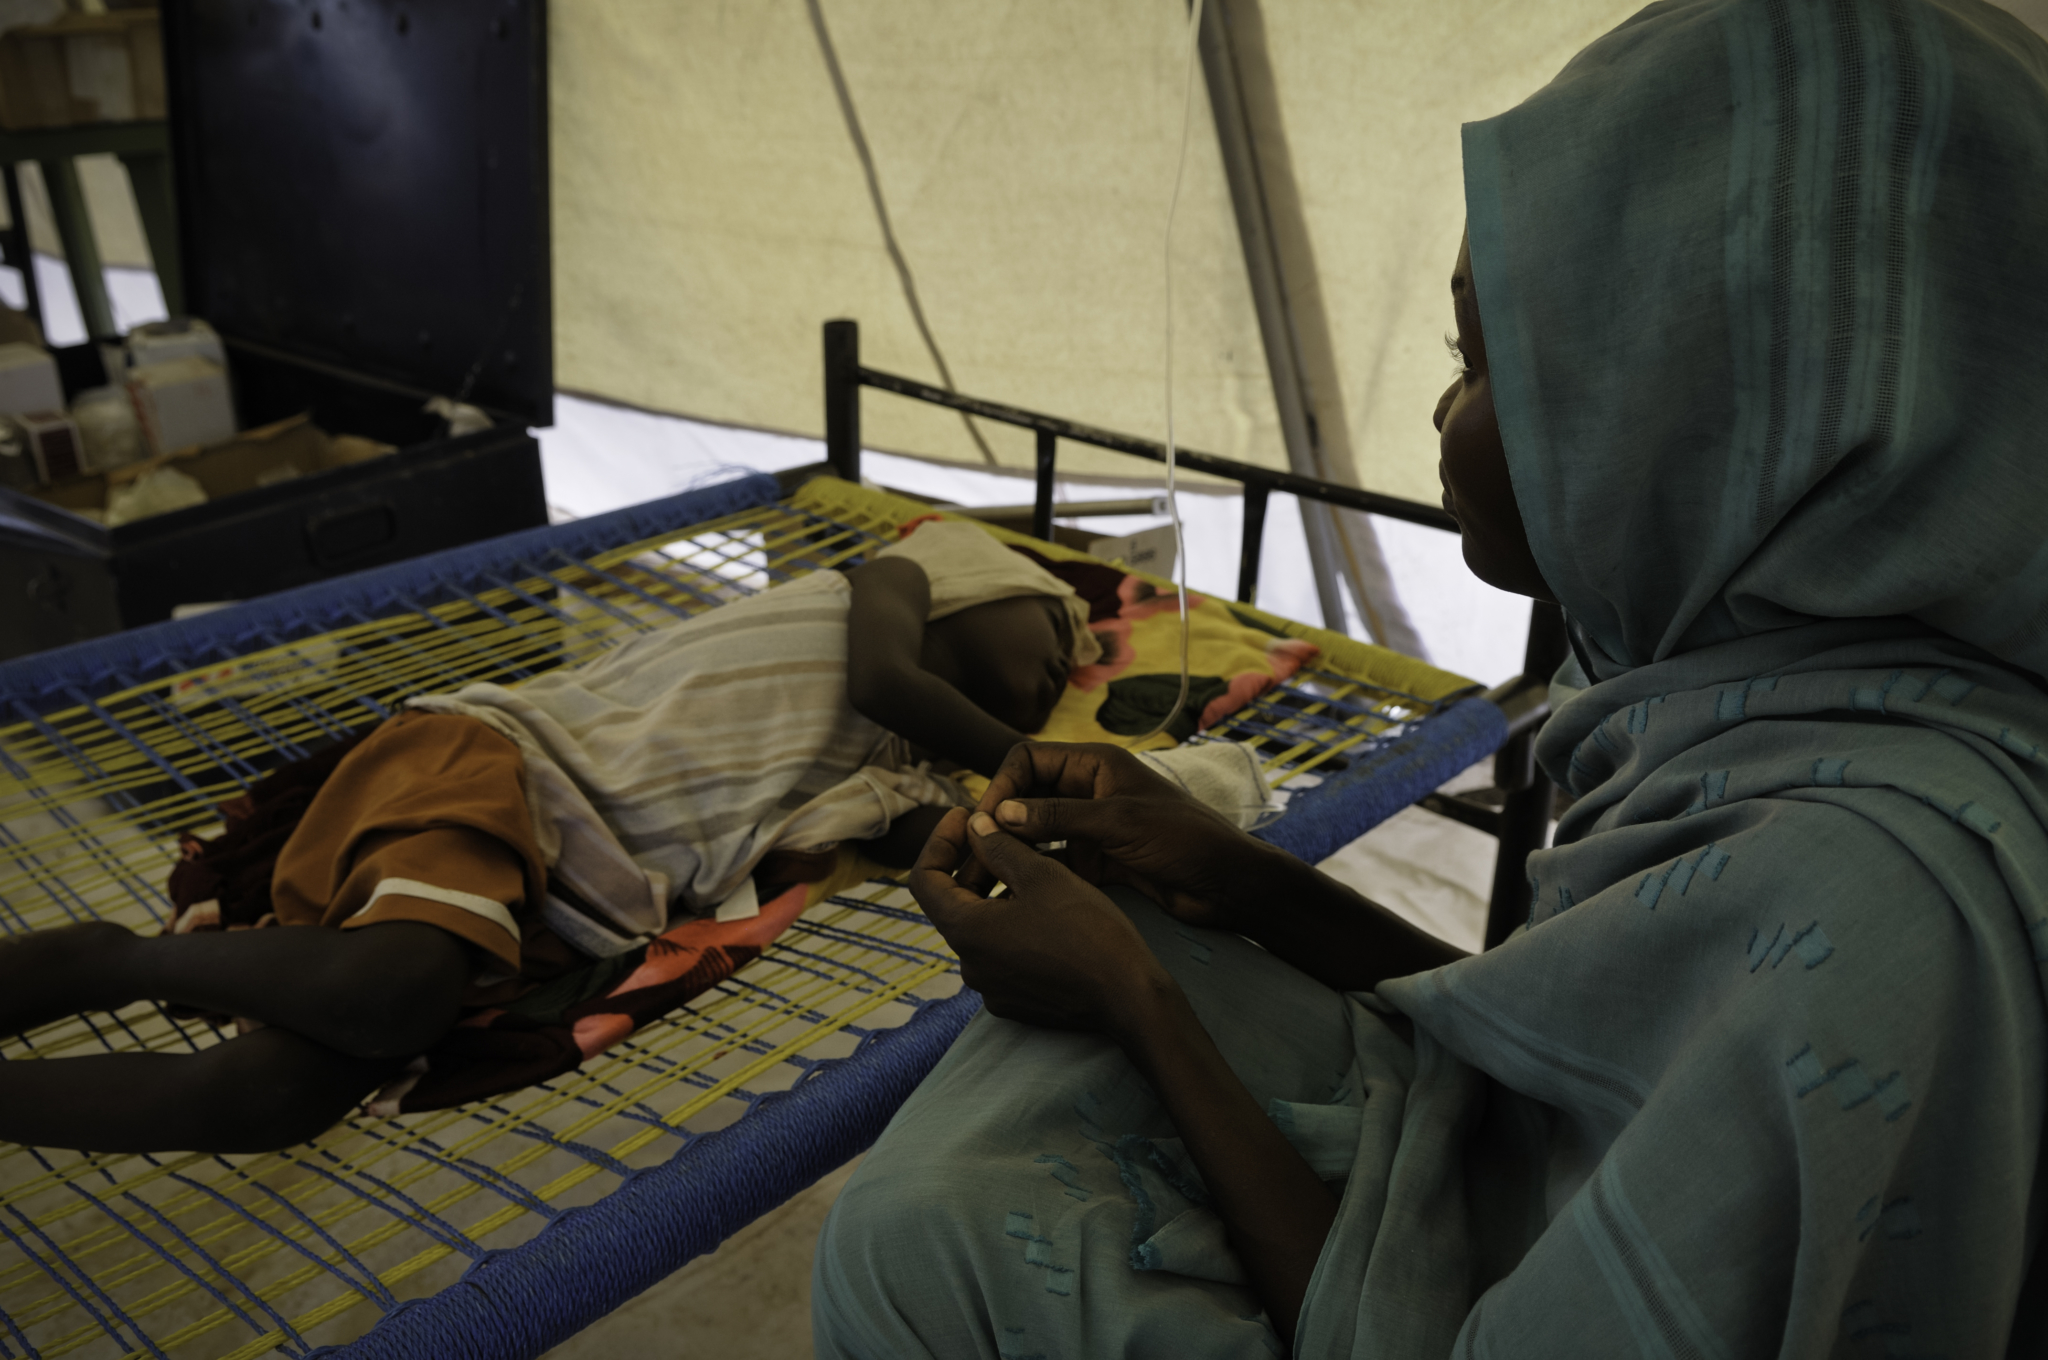 Desde novembro de 2011, MSF oferece ajuda médico-humanitária nos acampamentos de Doro e Jamam. Além da assistência médica, MSF tem clínicas móveis que percorrem a fronteira com o Sudão, onde outros milhares de refugiados estão reunidos. A organização conta com 180 toneladas de suprimentos médicos, logísticos e de abastecimento de água para trabalhar.